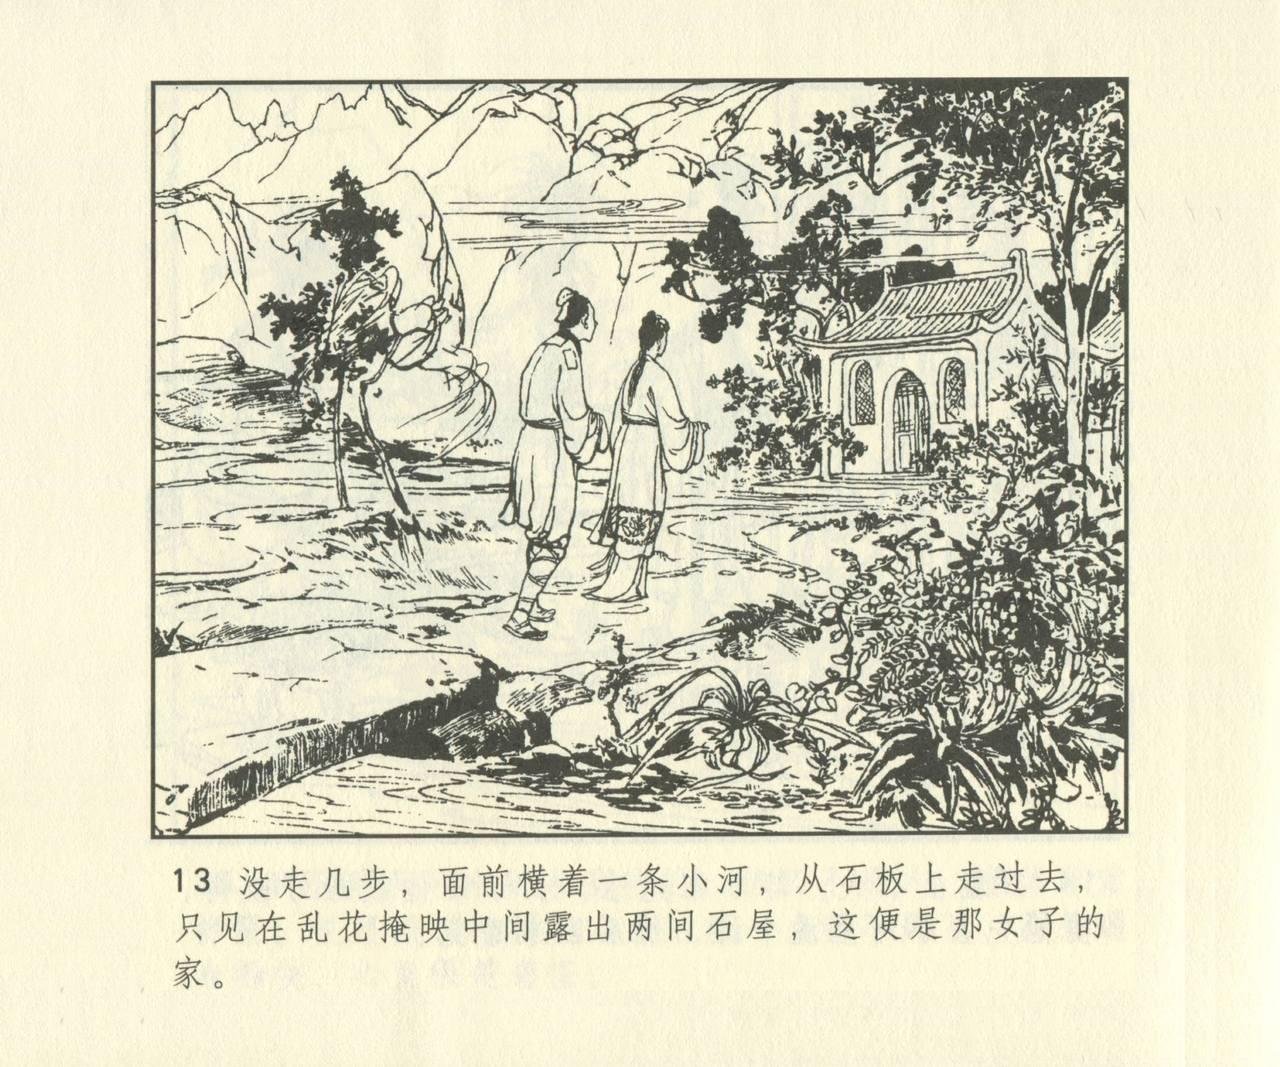 聊斋志异 张玮等绘 天津人民美术出版社 卷二十一 ~ 三十 629